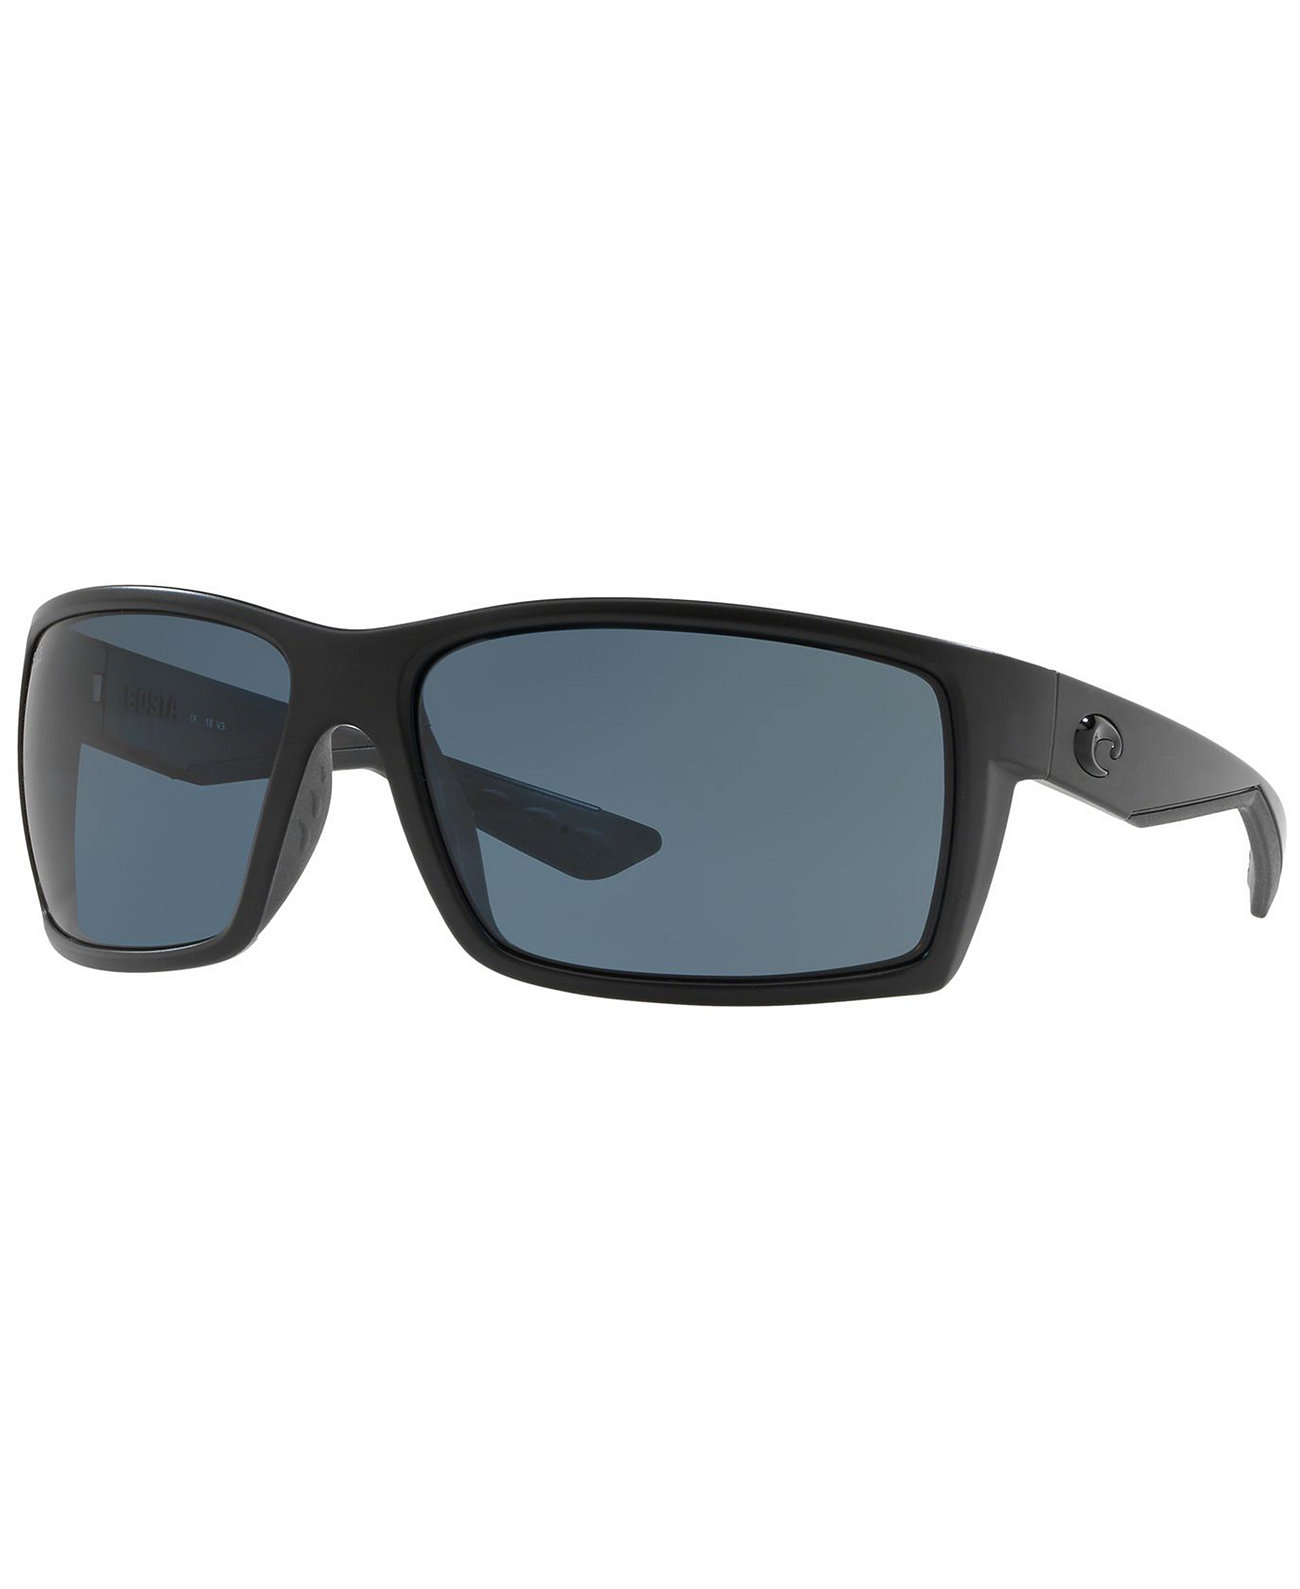 Поляризованные солнцезащитные очки REEFTON 64 COSTA DEL MAR